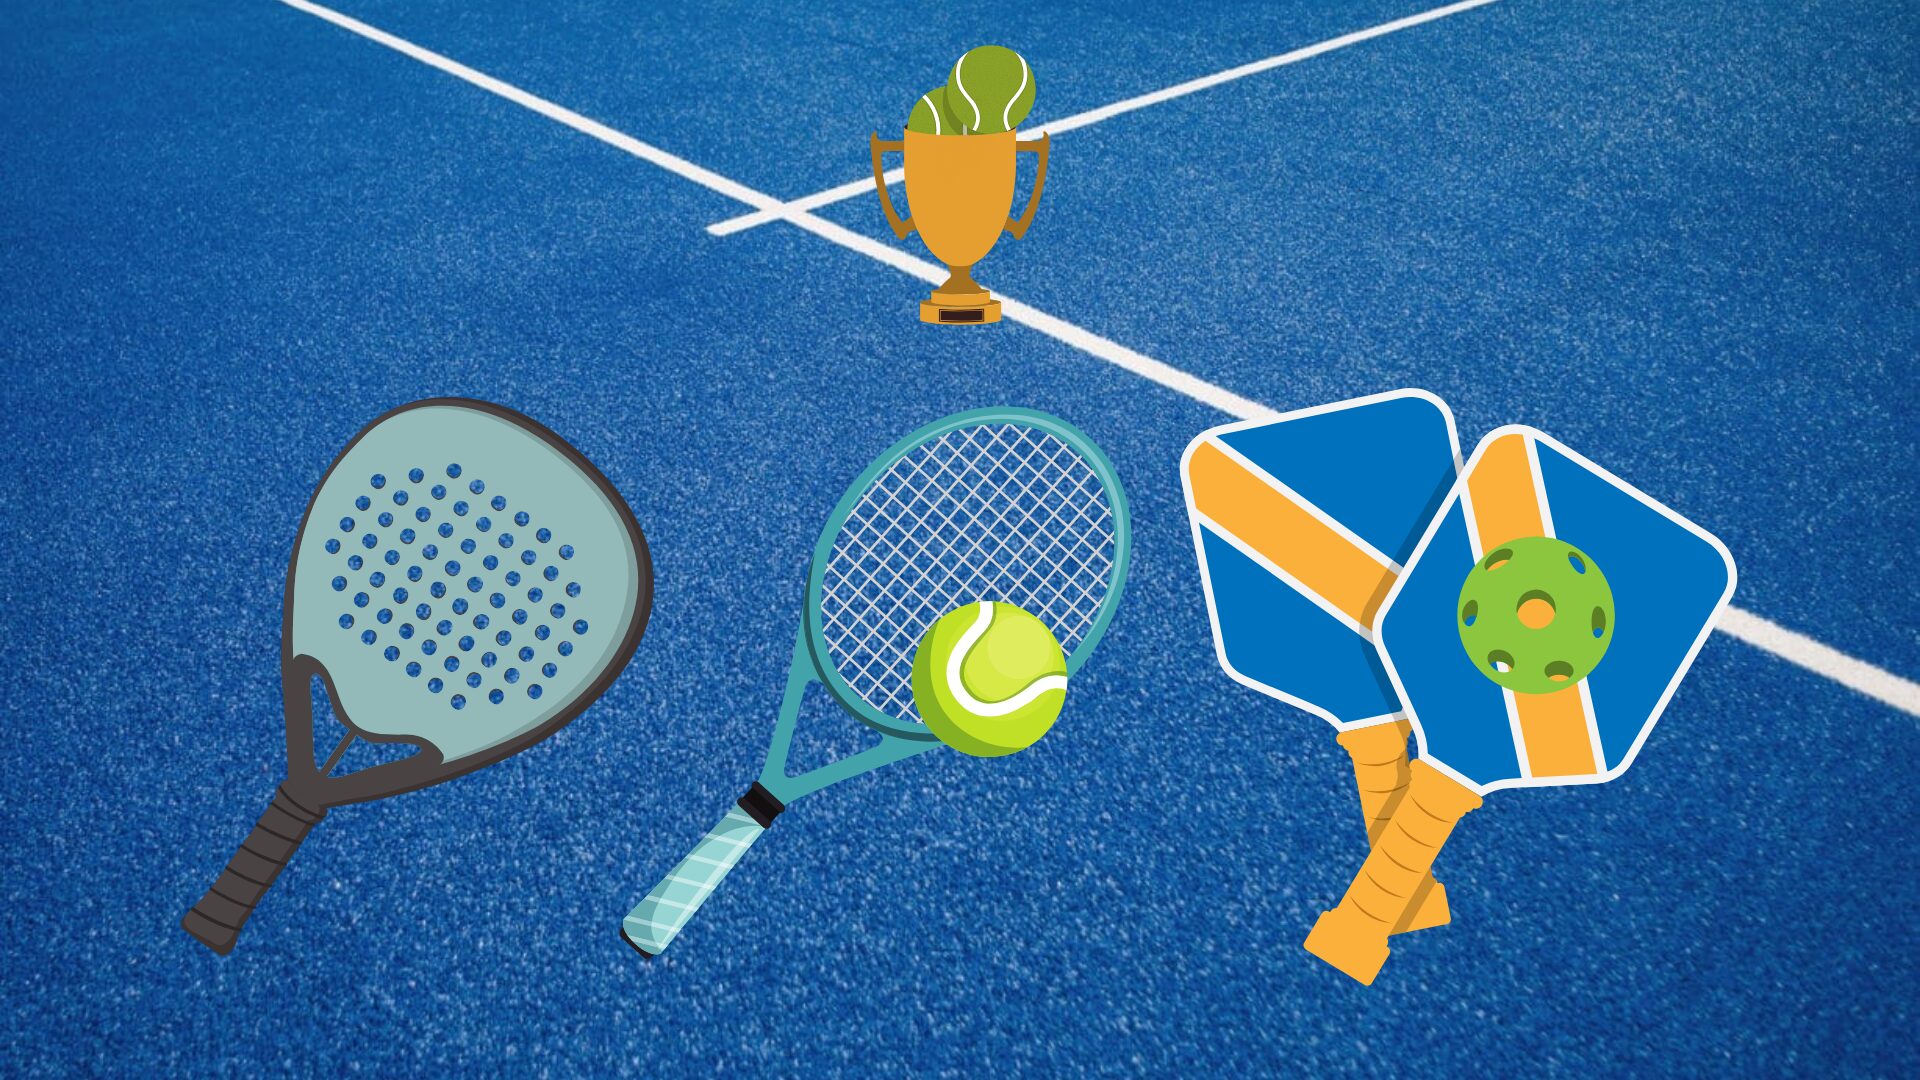 Le padel, le tennis et le pickleball peuvent-ils coexister ?